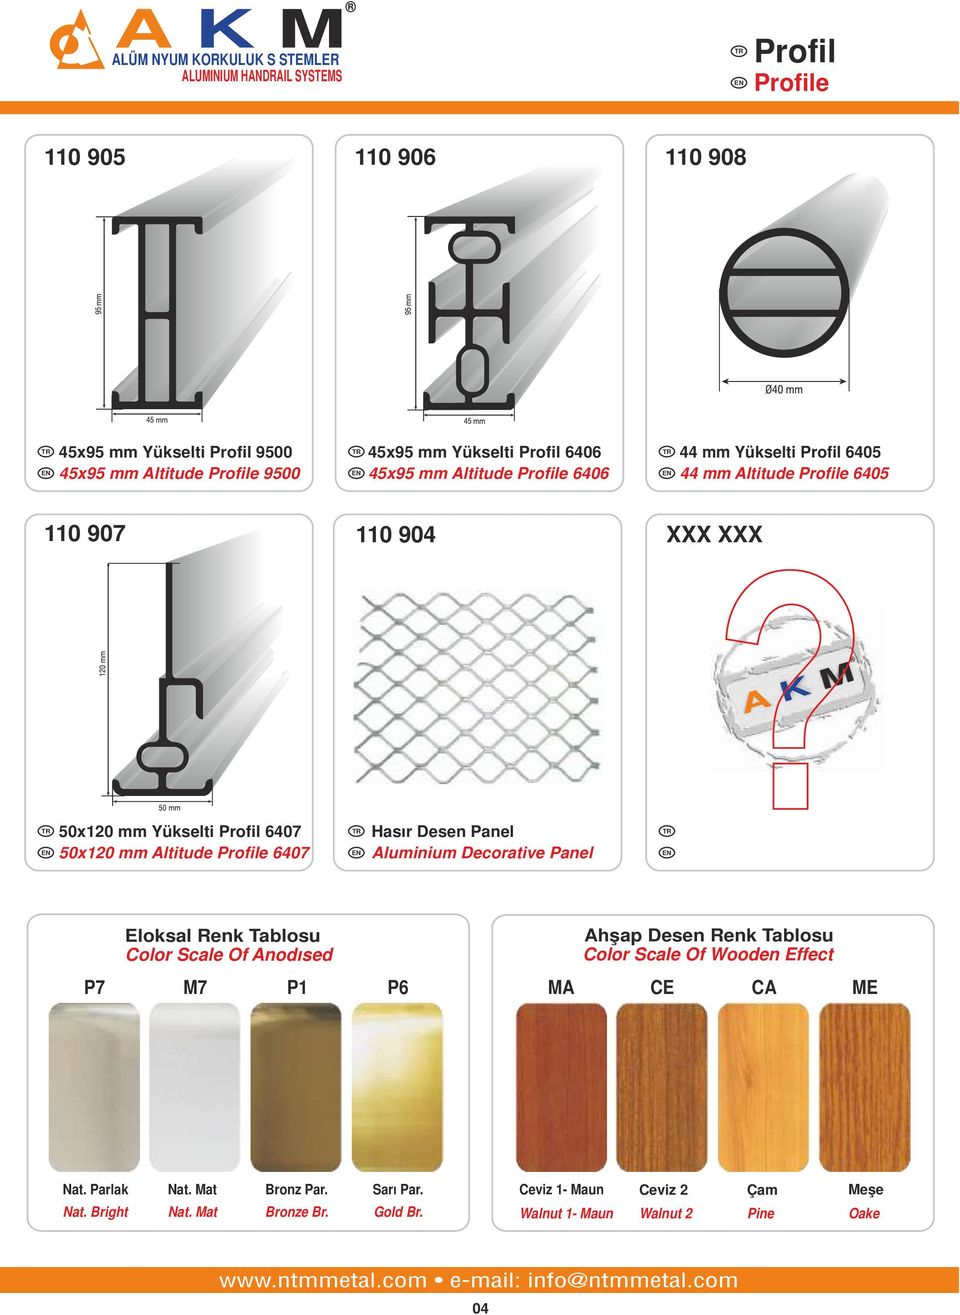 Desen Panel Aluminium Decorative Panel Eloksal Renk Tablosu Color Scale Of Anodısed Ahşap Desen Renk Tablosu Color Scale Of Wooden Effect P7 M7 P1 P6 MA CE